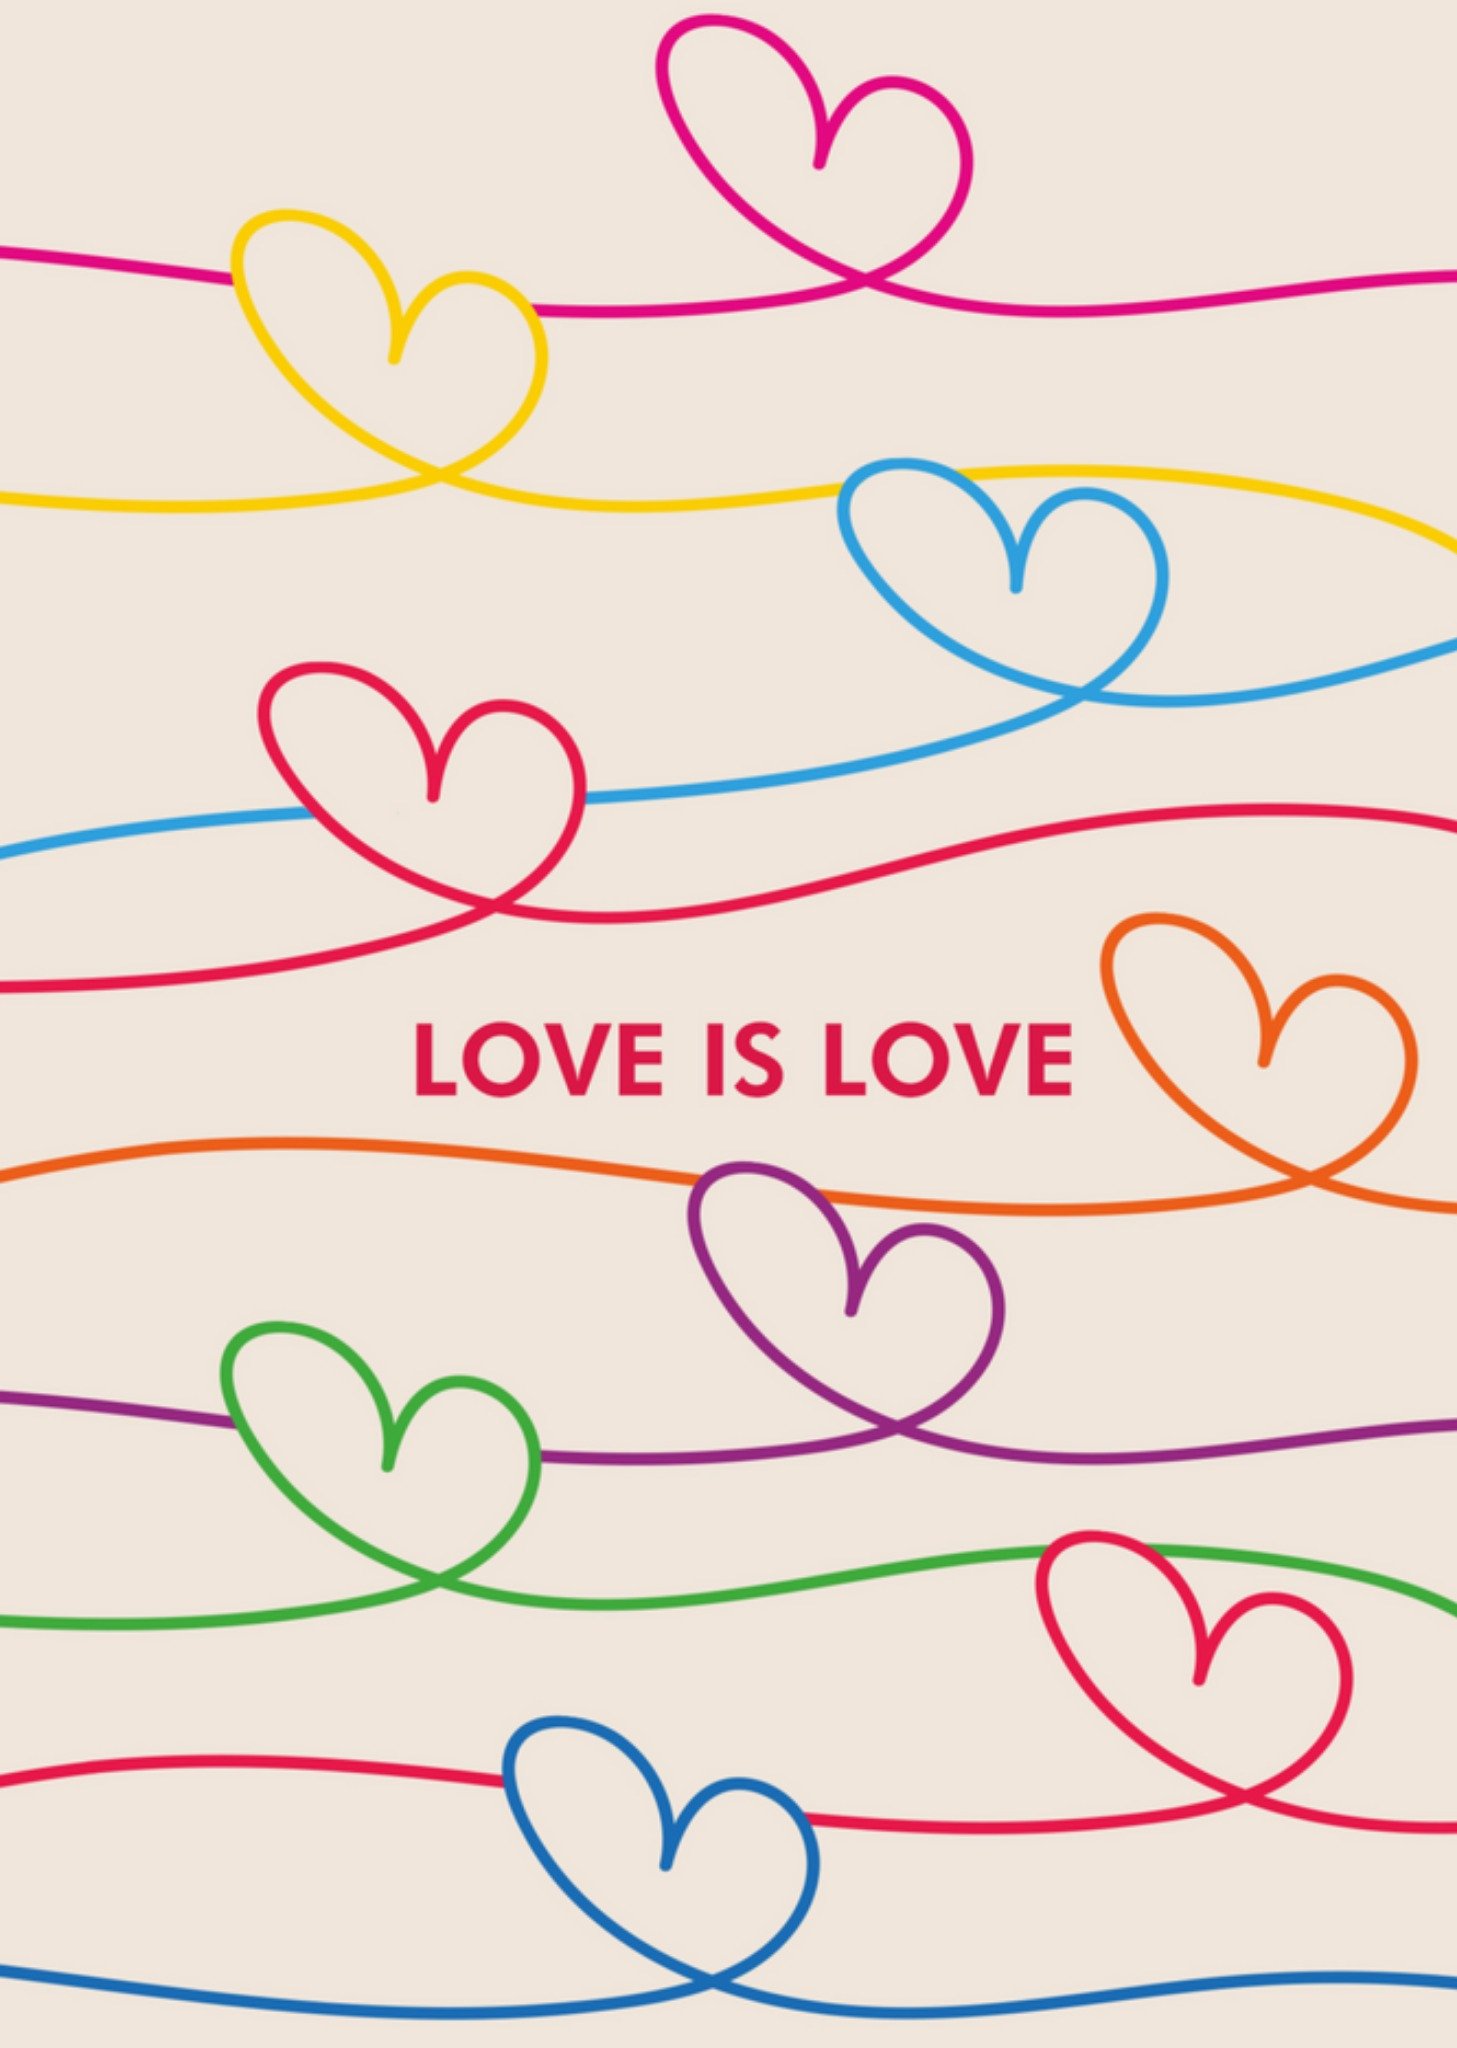 Pride kaart - love is love